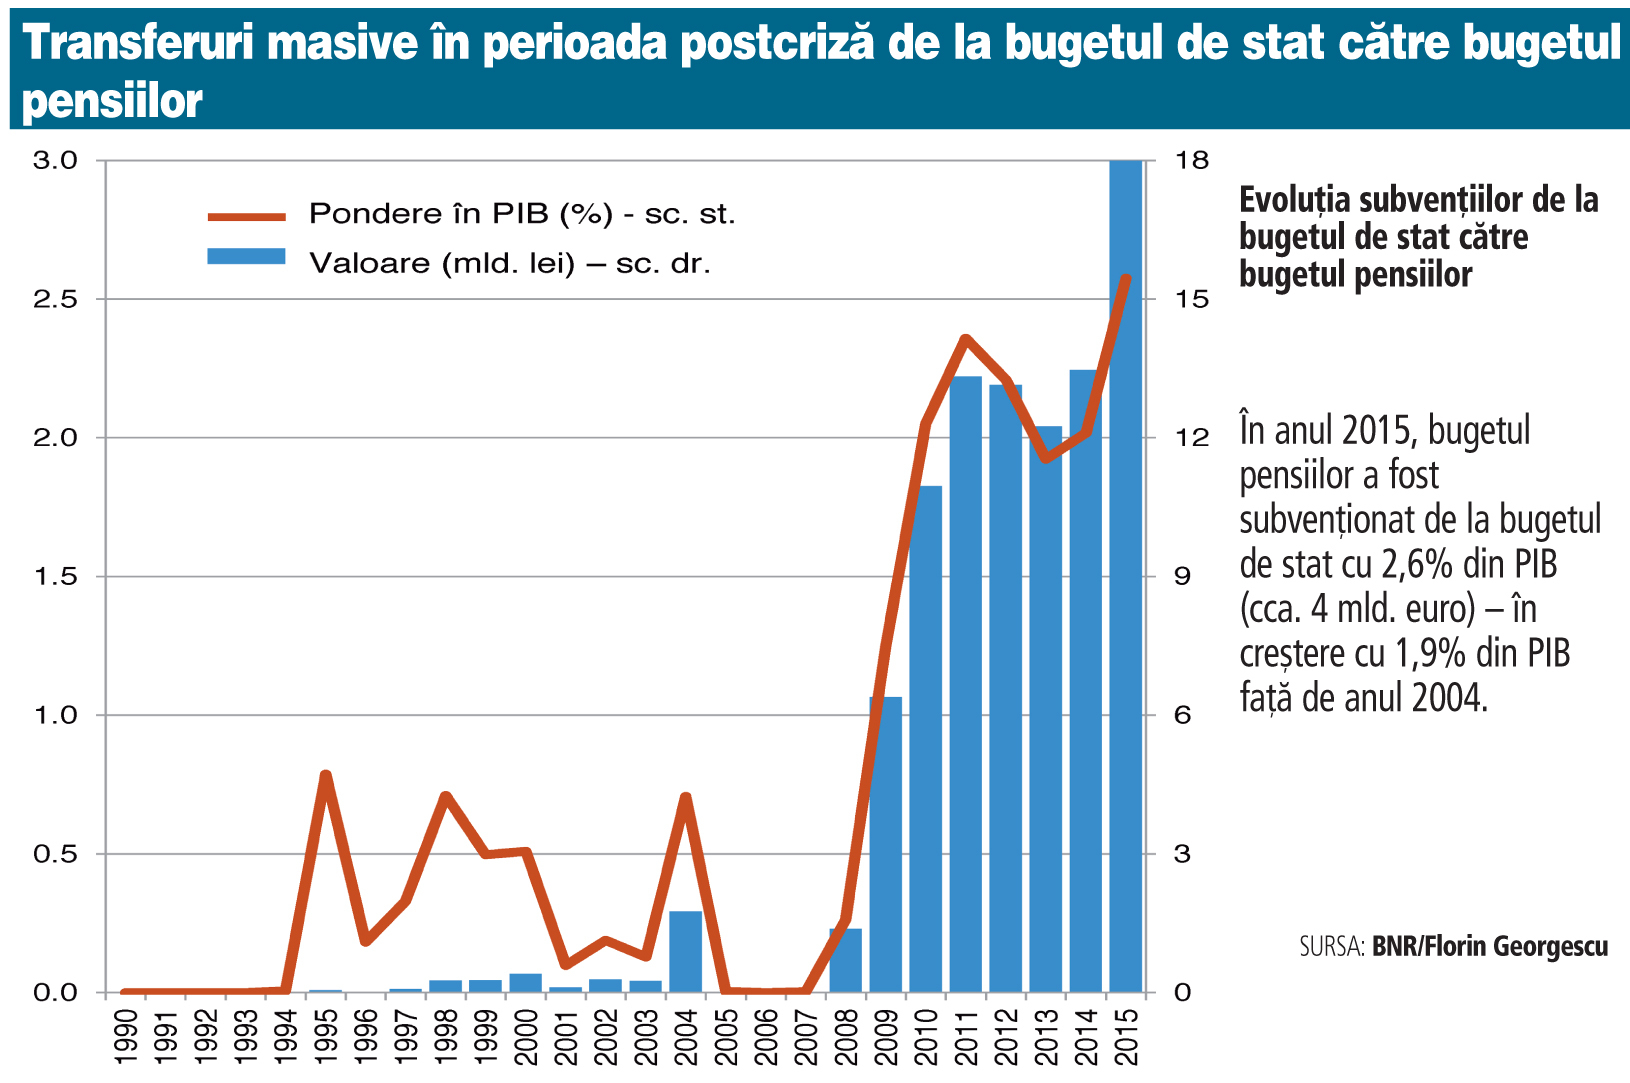 România a adunat un deficit cumulat de 85 mld. lei la pensii din 2007 încoace